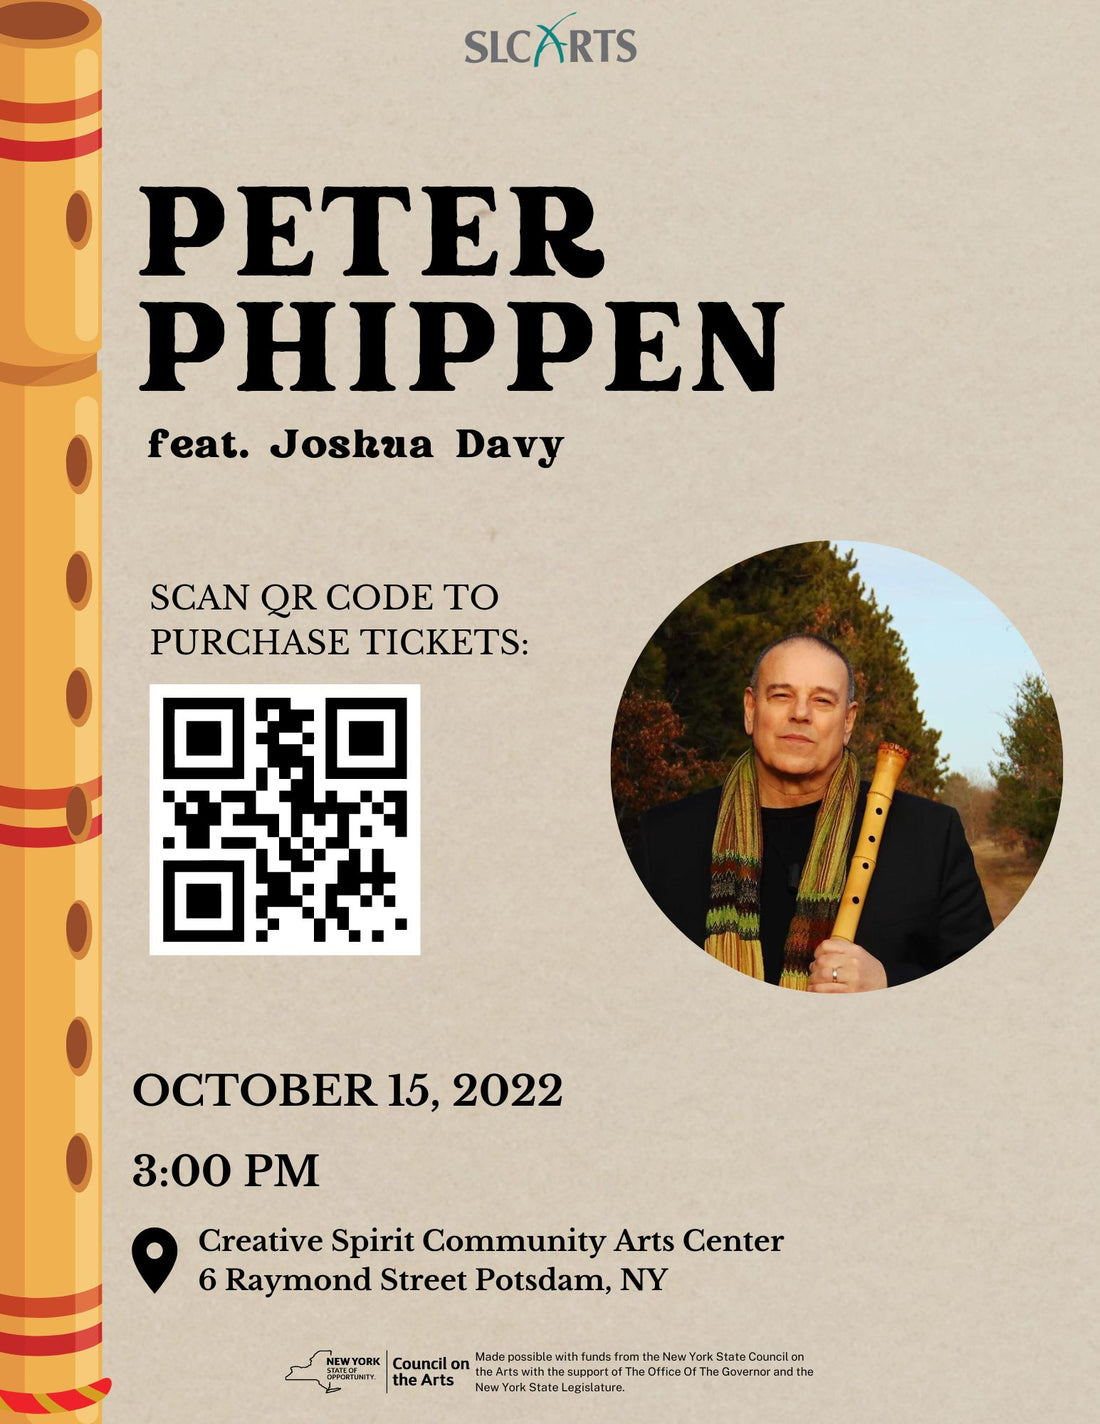 Peter Phippen Concert